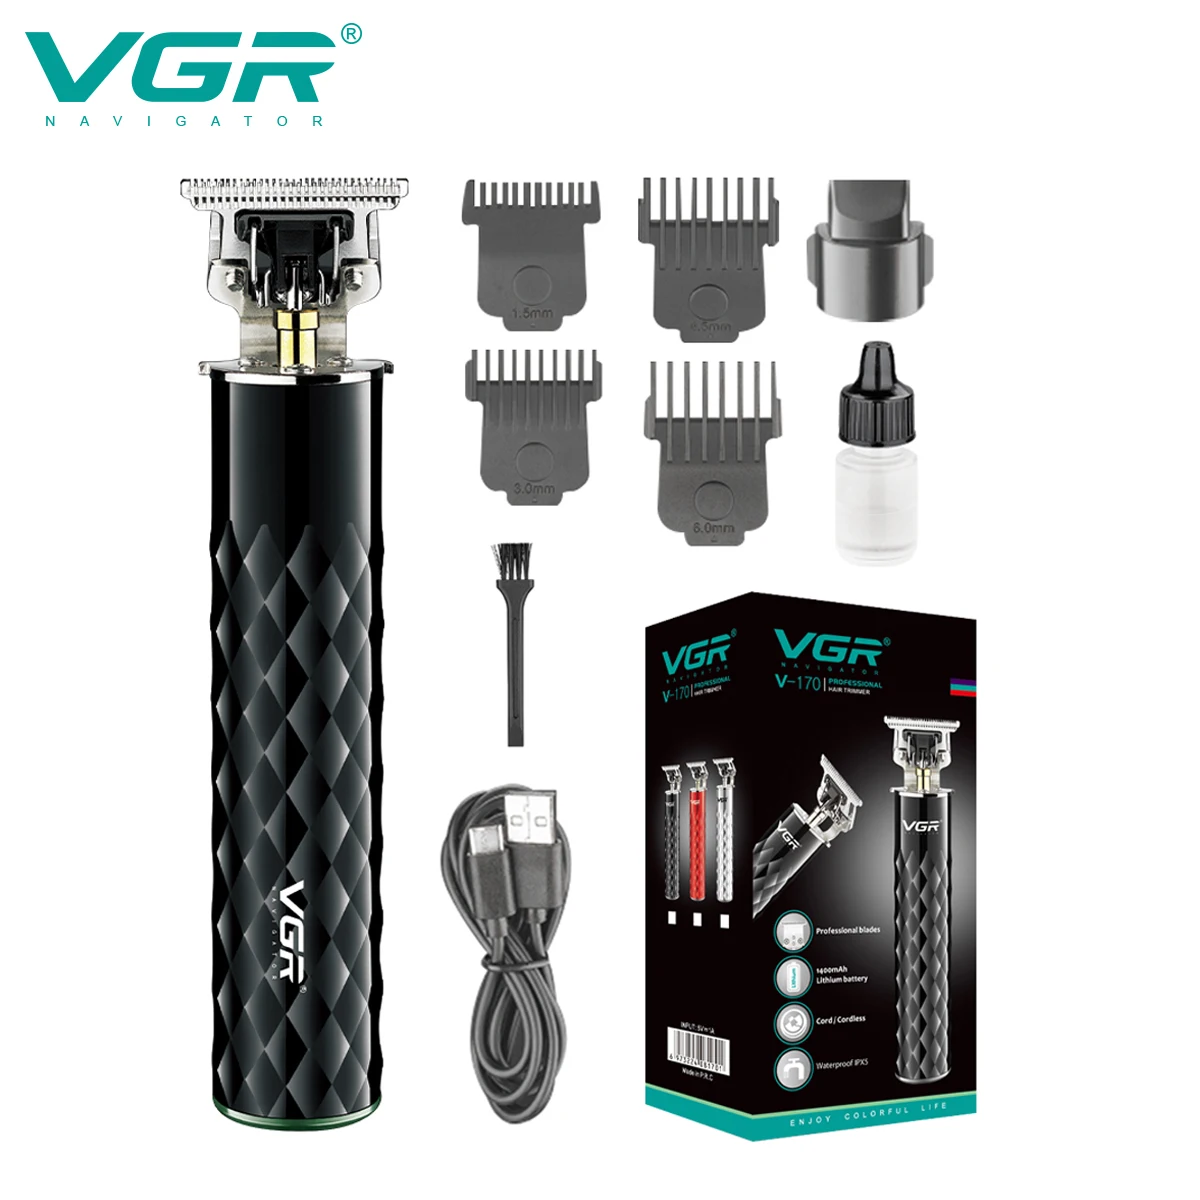 

VGR машинка для бритья машинка для стрижки волос Триммер для волос Водонепроницаемый машинка для стрижки волос Электрический Машинка для стрижки волос беспроводной Стрижка машина Т9 Машина для нулевой резки V-170